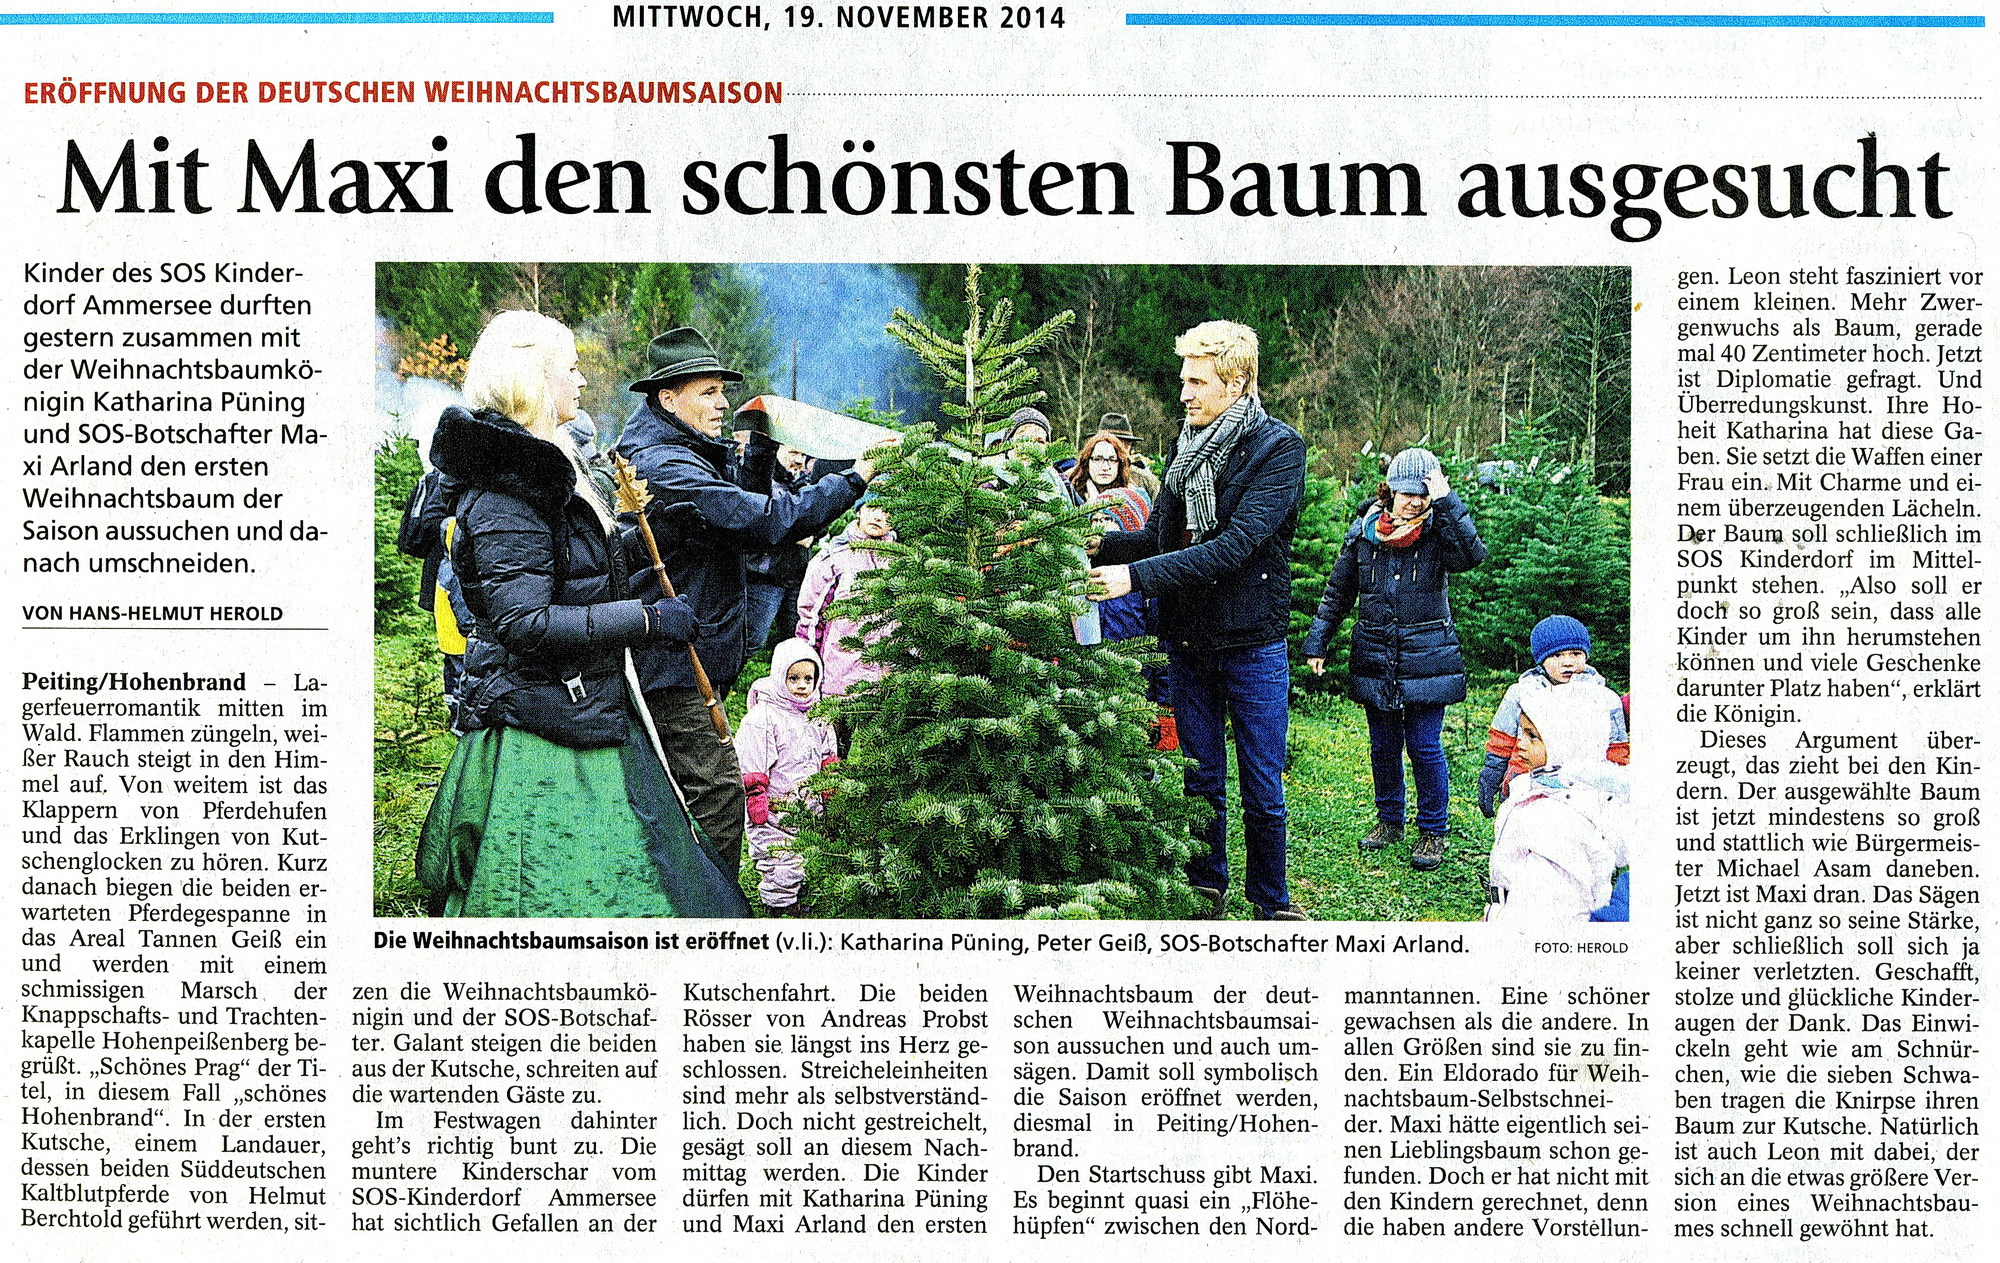 Tannen Geiß - Schongauer Nachrichten - November 2014